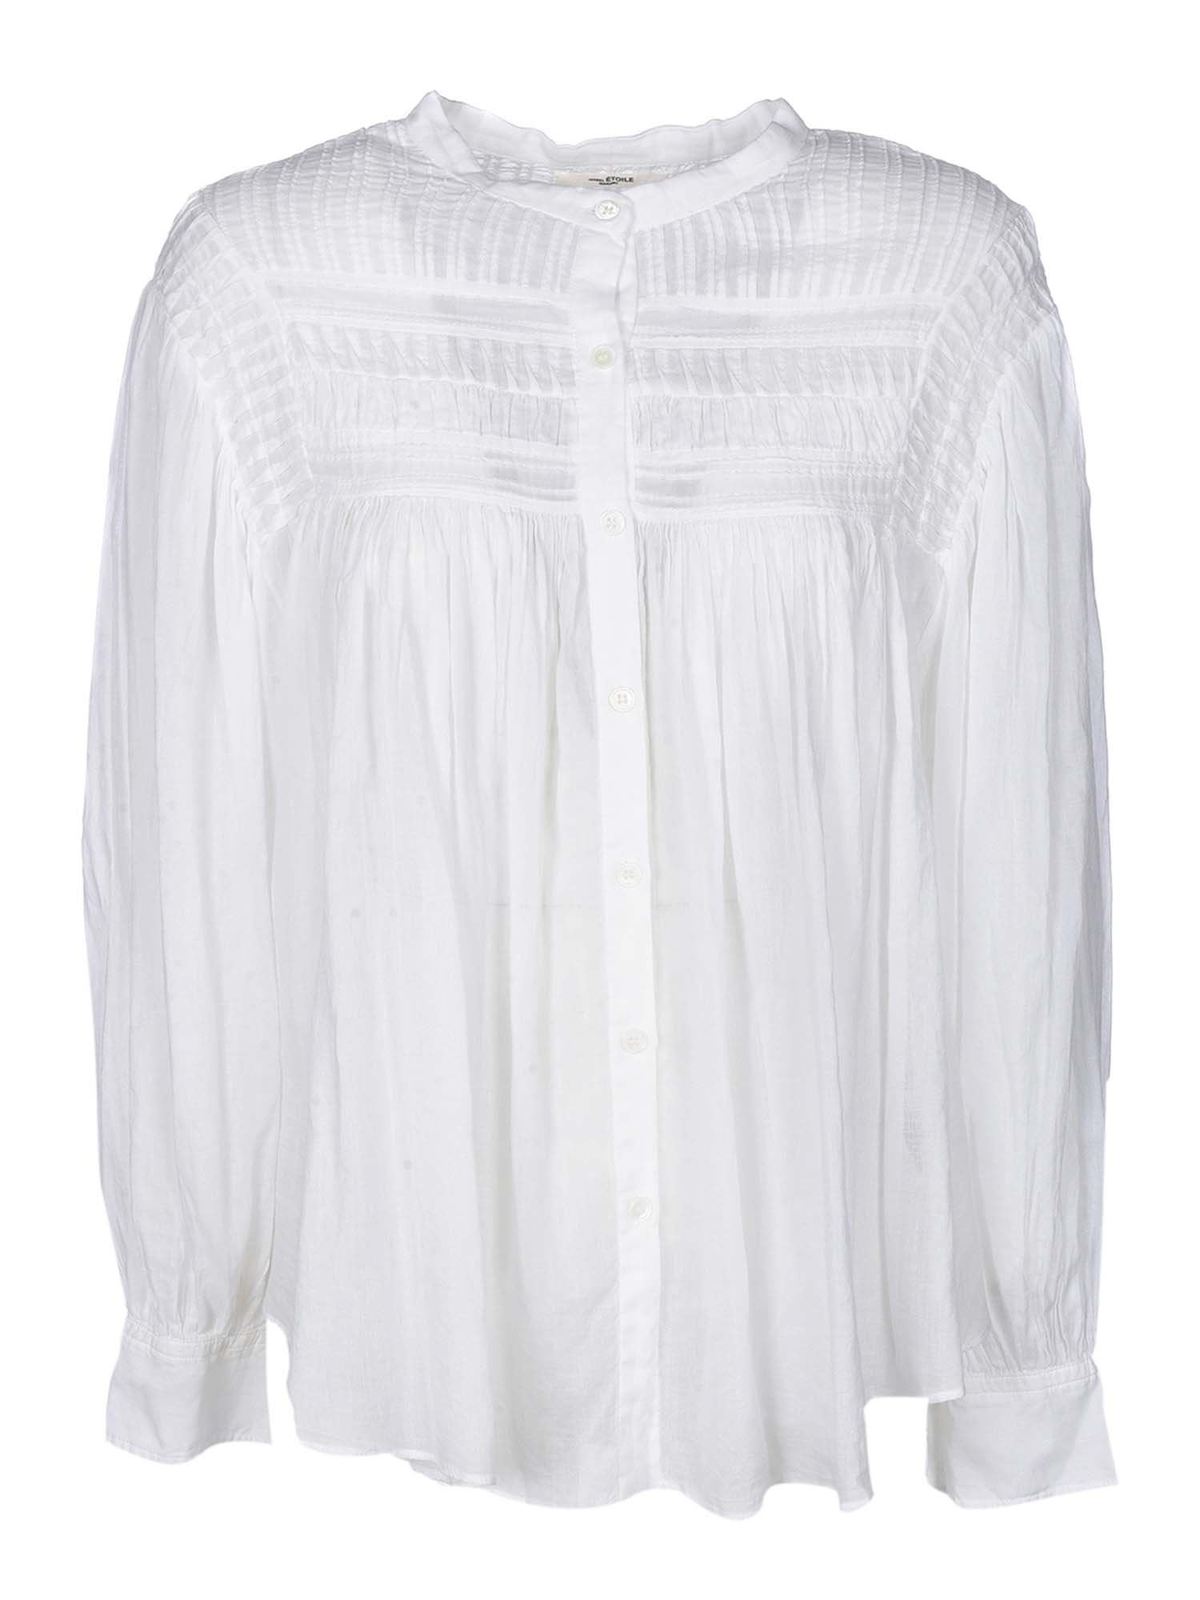 fad Aubergine skipper Shirts isabel marant etoile - Plalia shirt in white - HT182120A052EWHITE